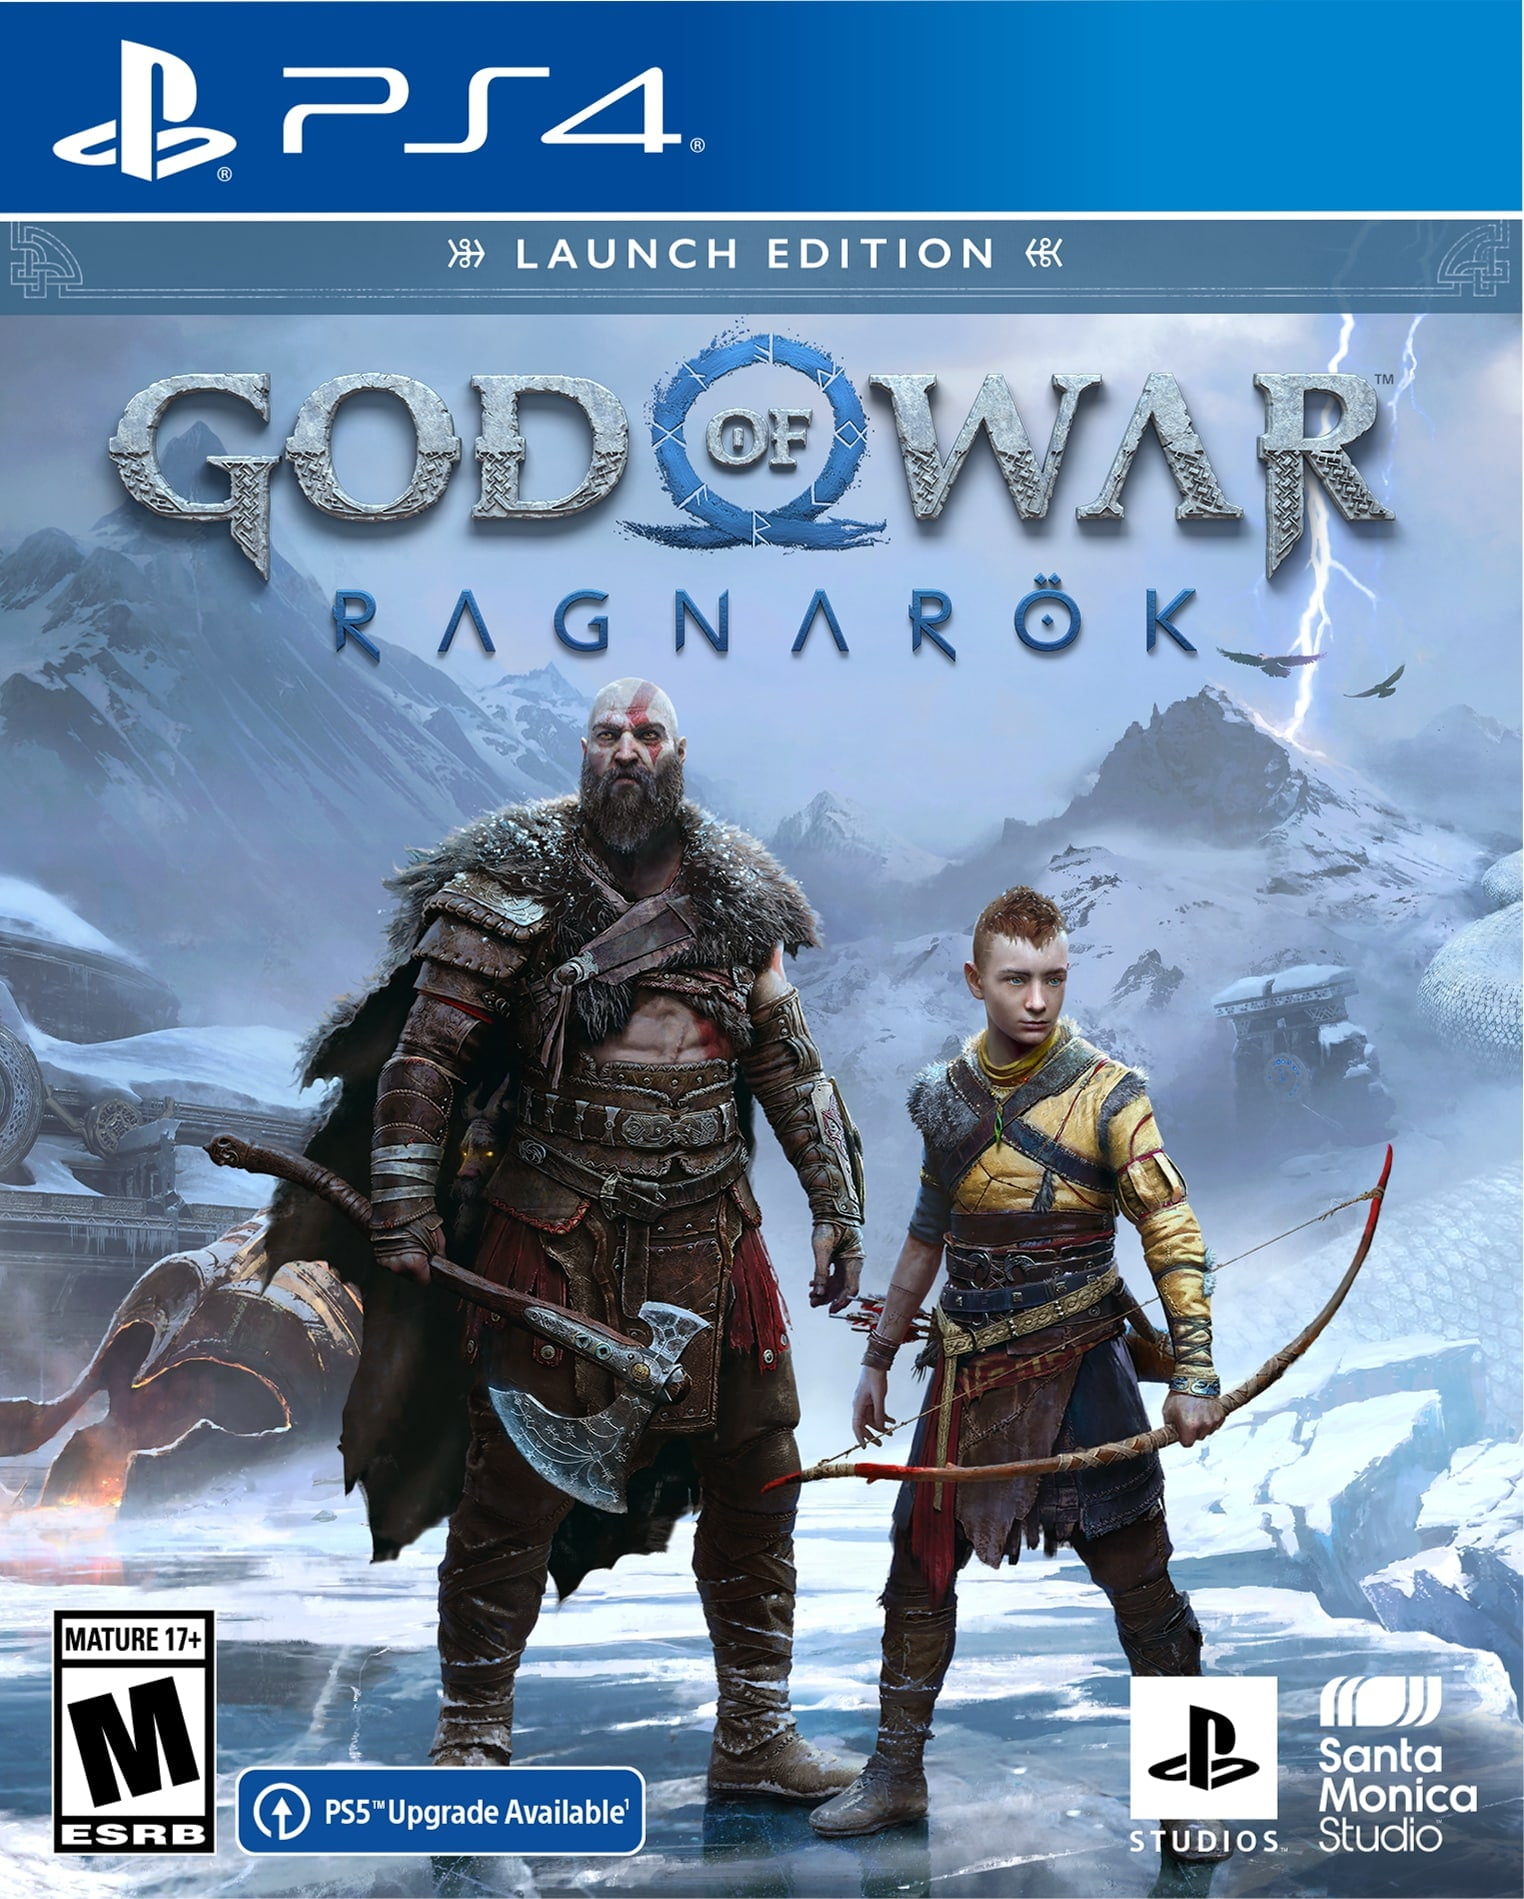 GOD OF WAR RAGNAROK PS4 - Seminovo - Tondin Games